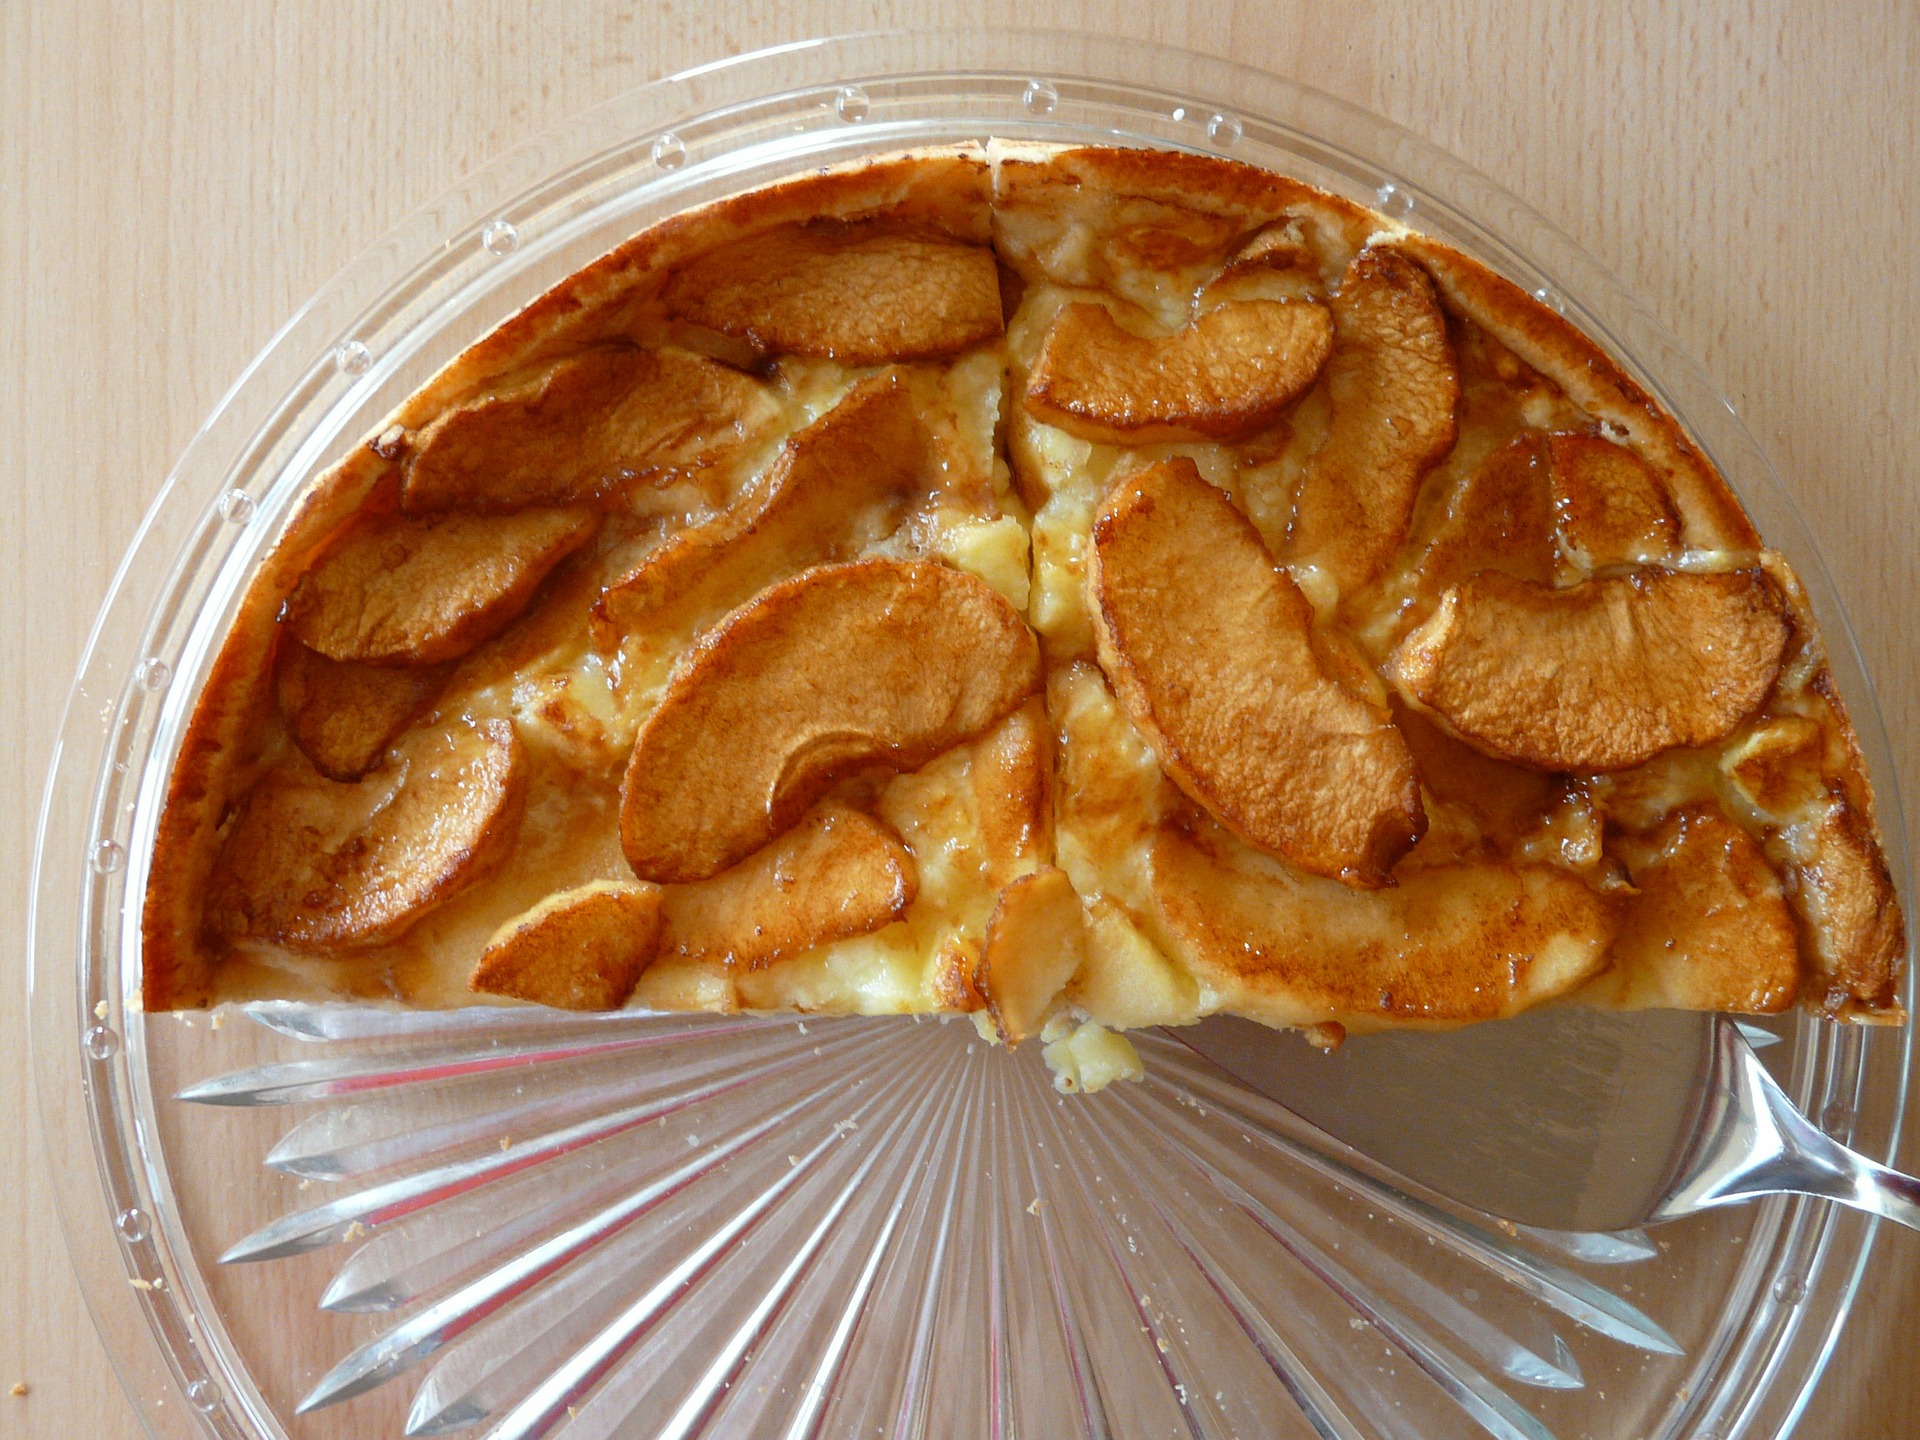 Apfelkuchen aus Joghurt-Rührteig mit Ahornsirup - Lecker backen